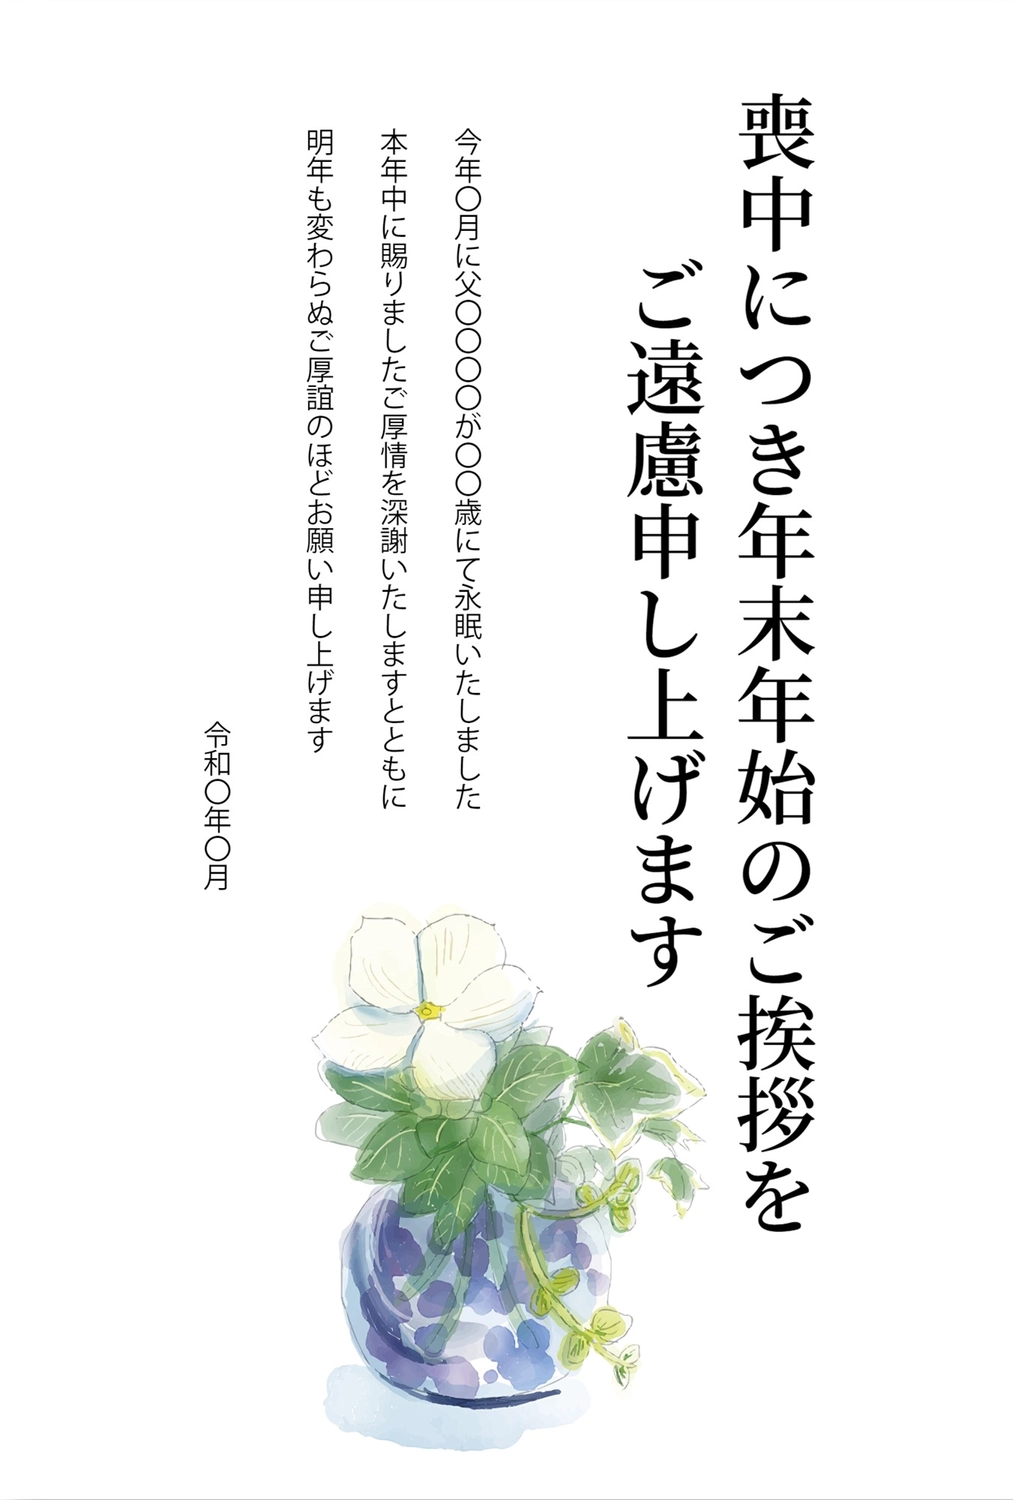 花瓶の喪中はがき, 흰 꽃, 永眠, お悔み, 상중 엽서 템플릿